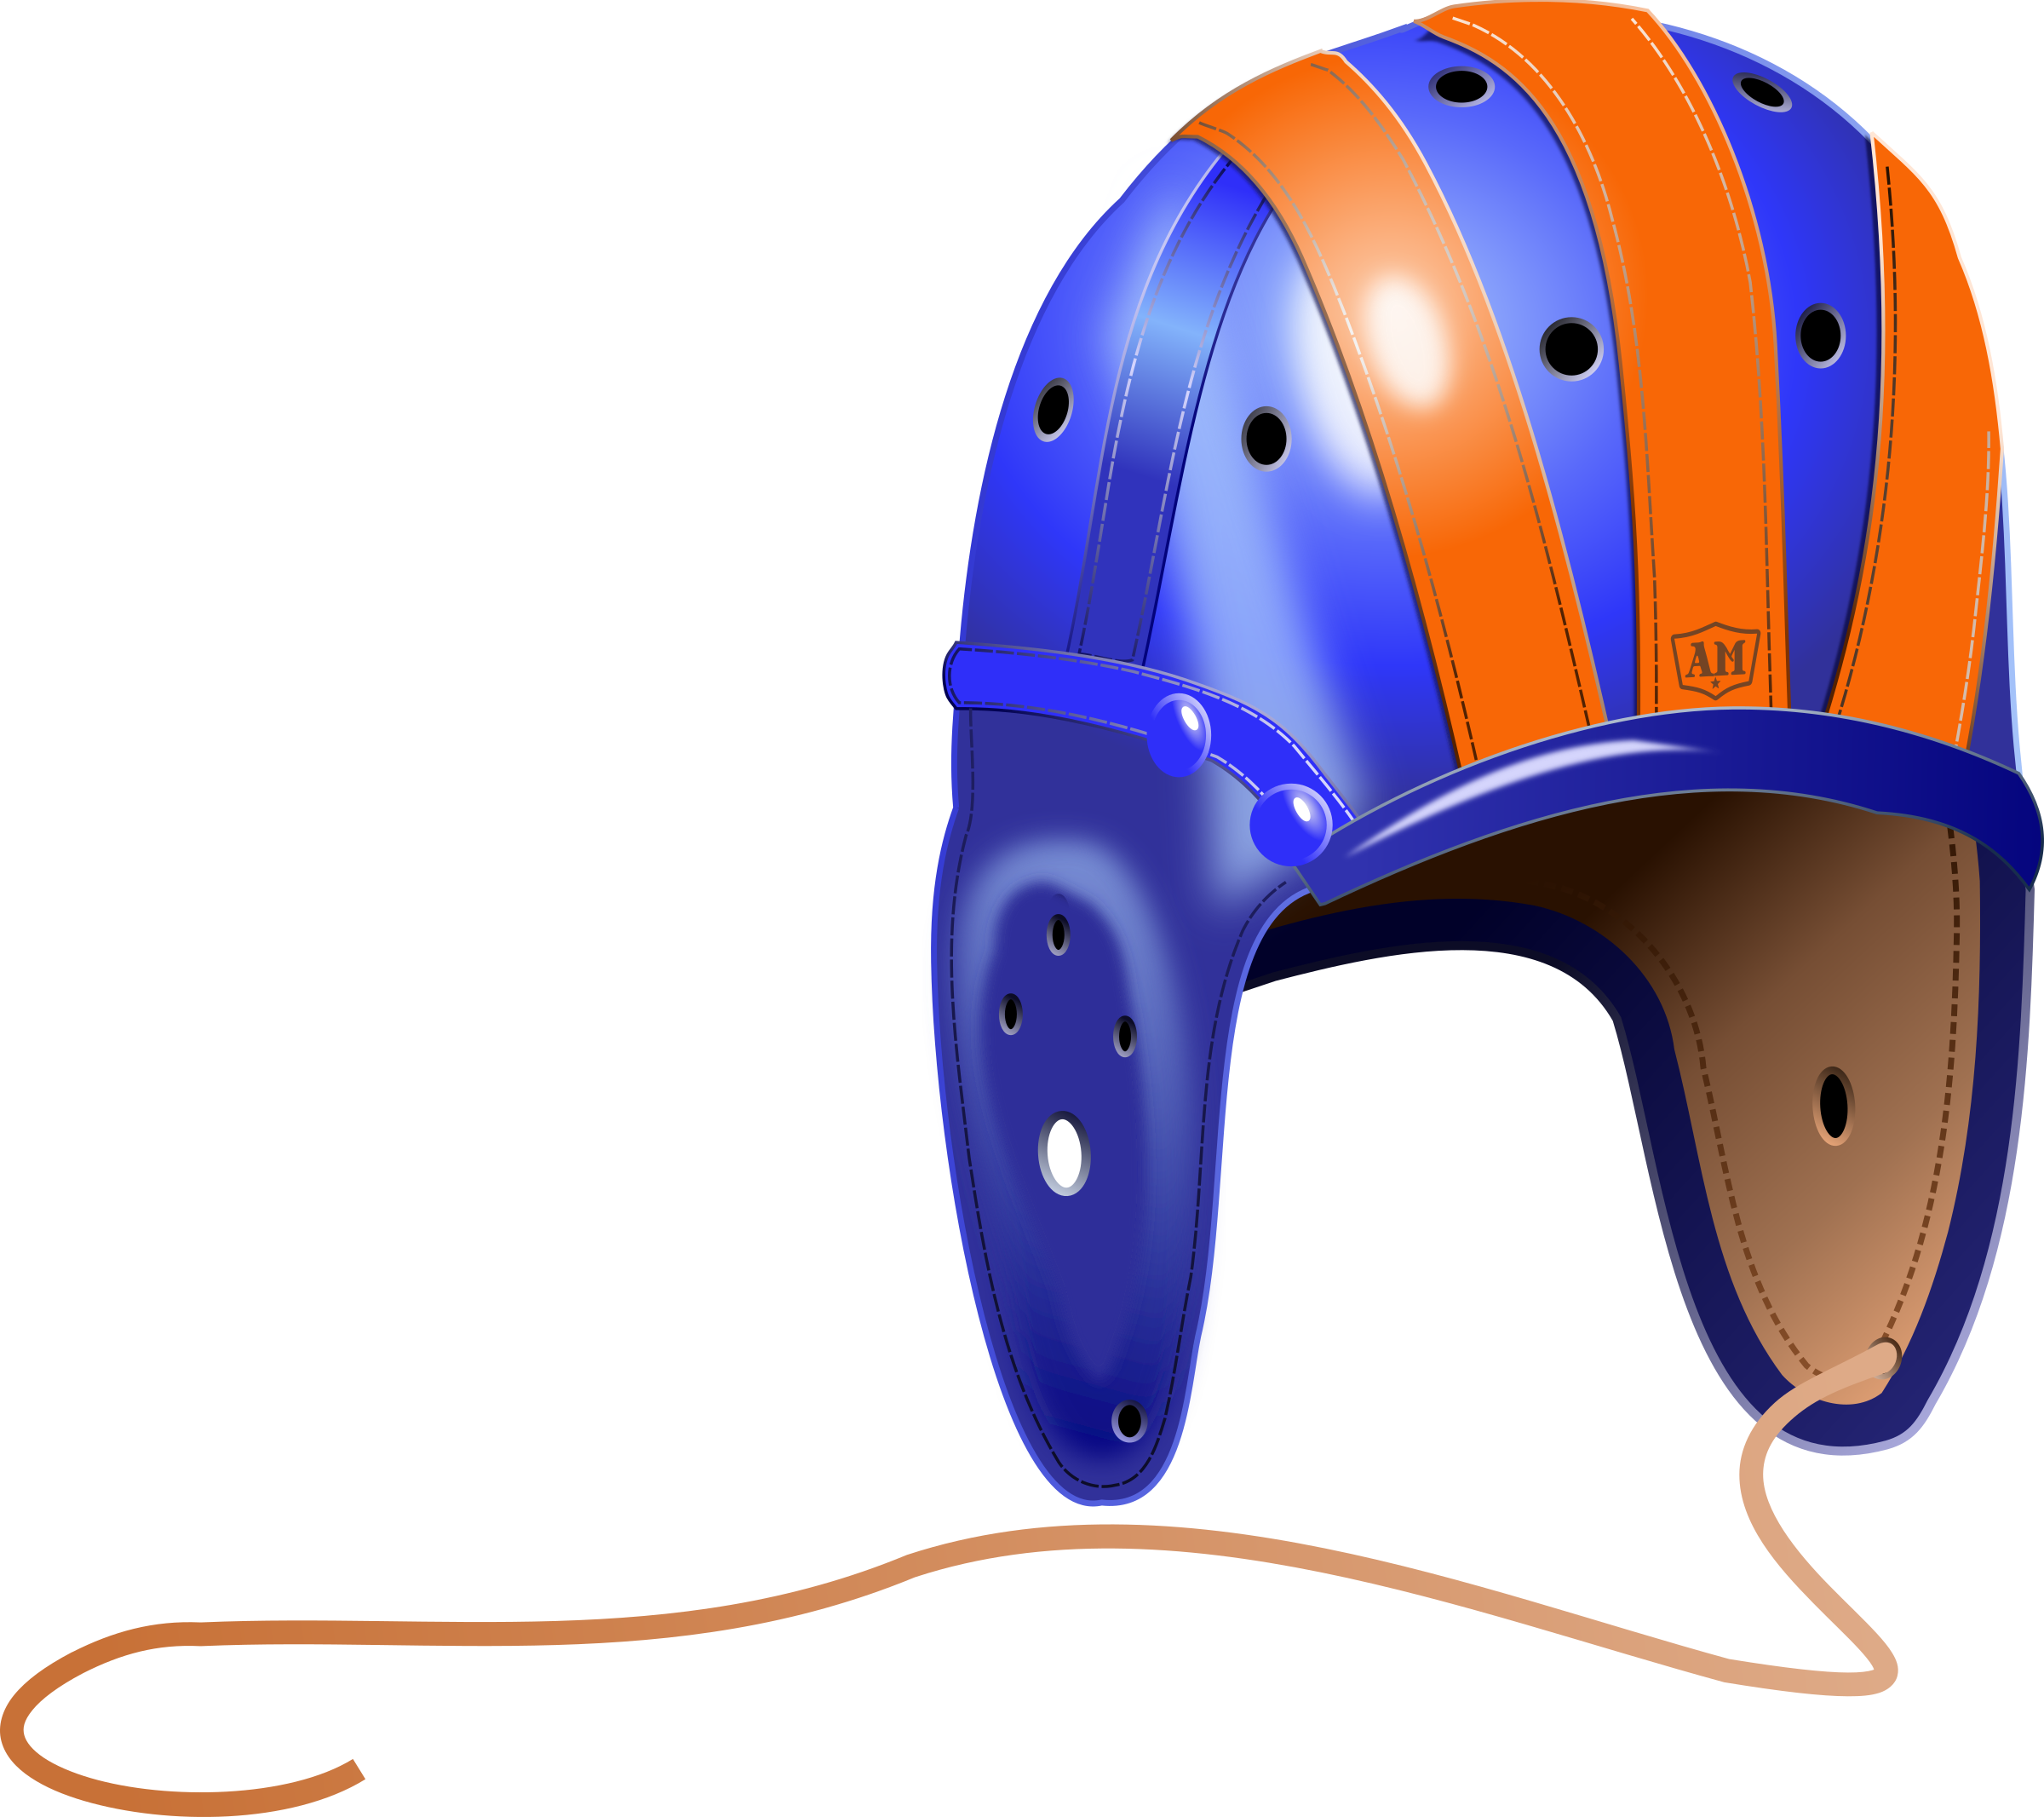 Leather Football Helmet - Transparent Football Old Style Helmet (2400x2133)